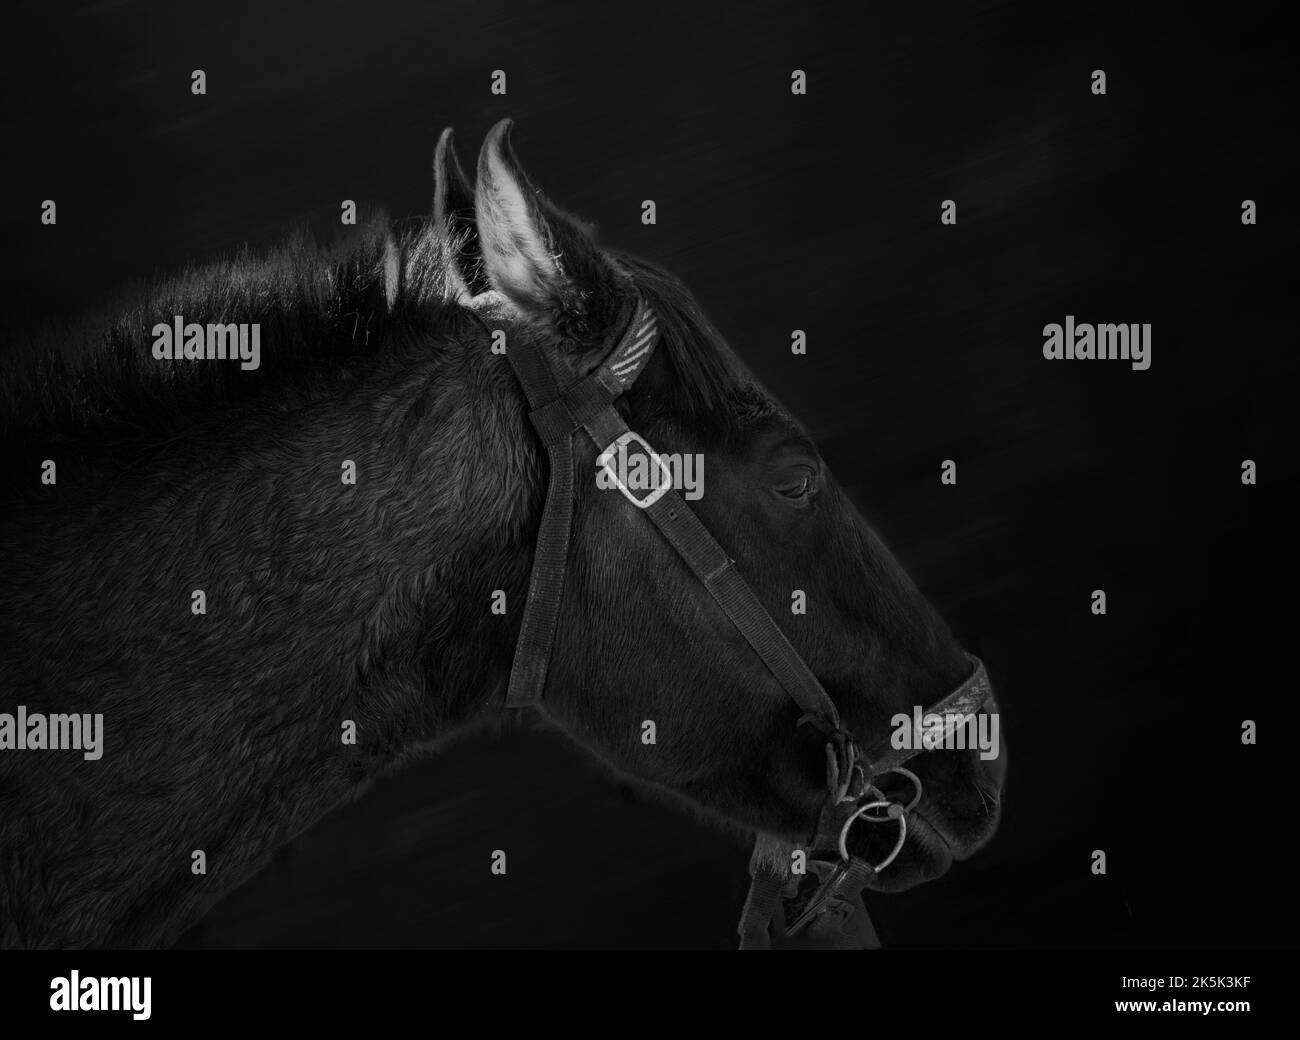 Belle arti, immagine a basso cavallo chiave su sfondo nero Foto Stock